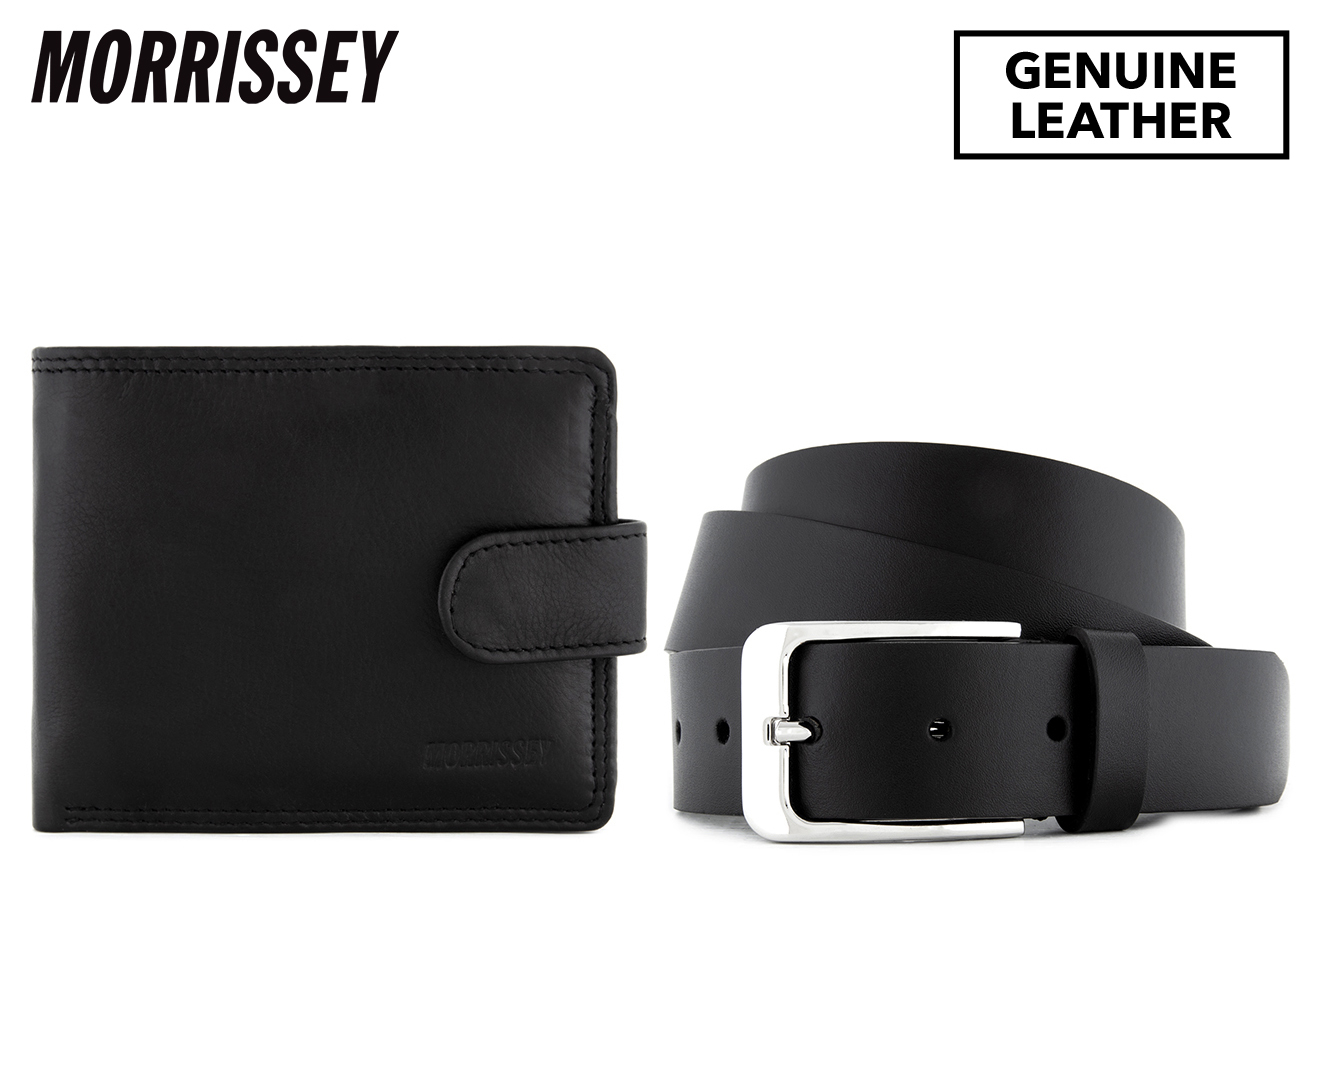 Morrissey Men's Leather Belt & Wallet Gift Set - Black | Catch.co.nz